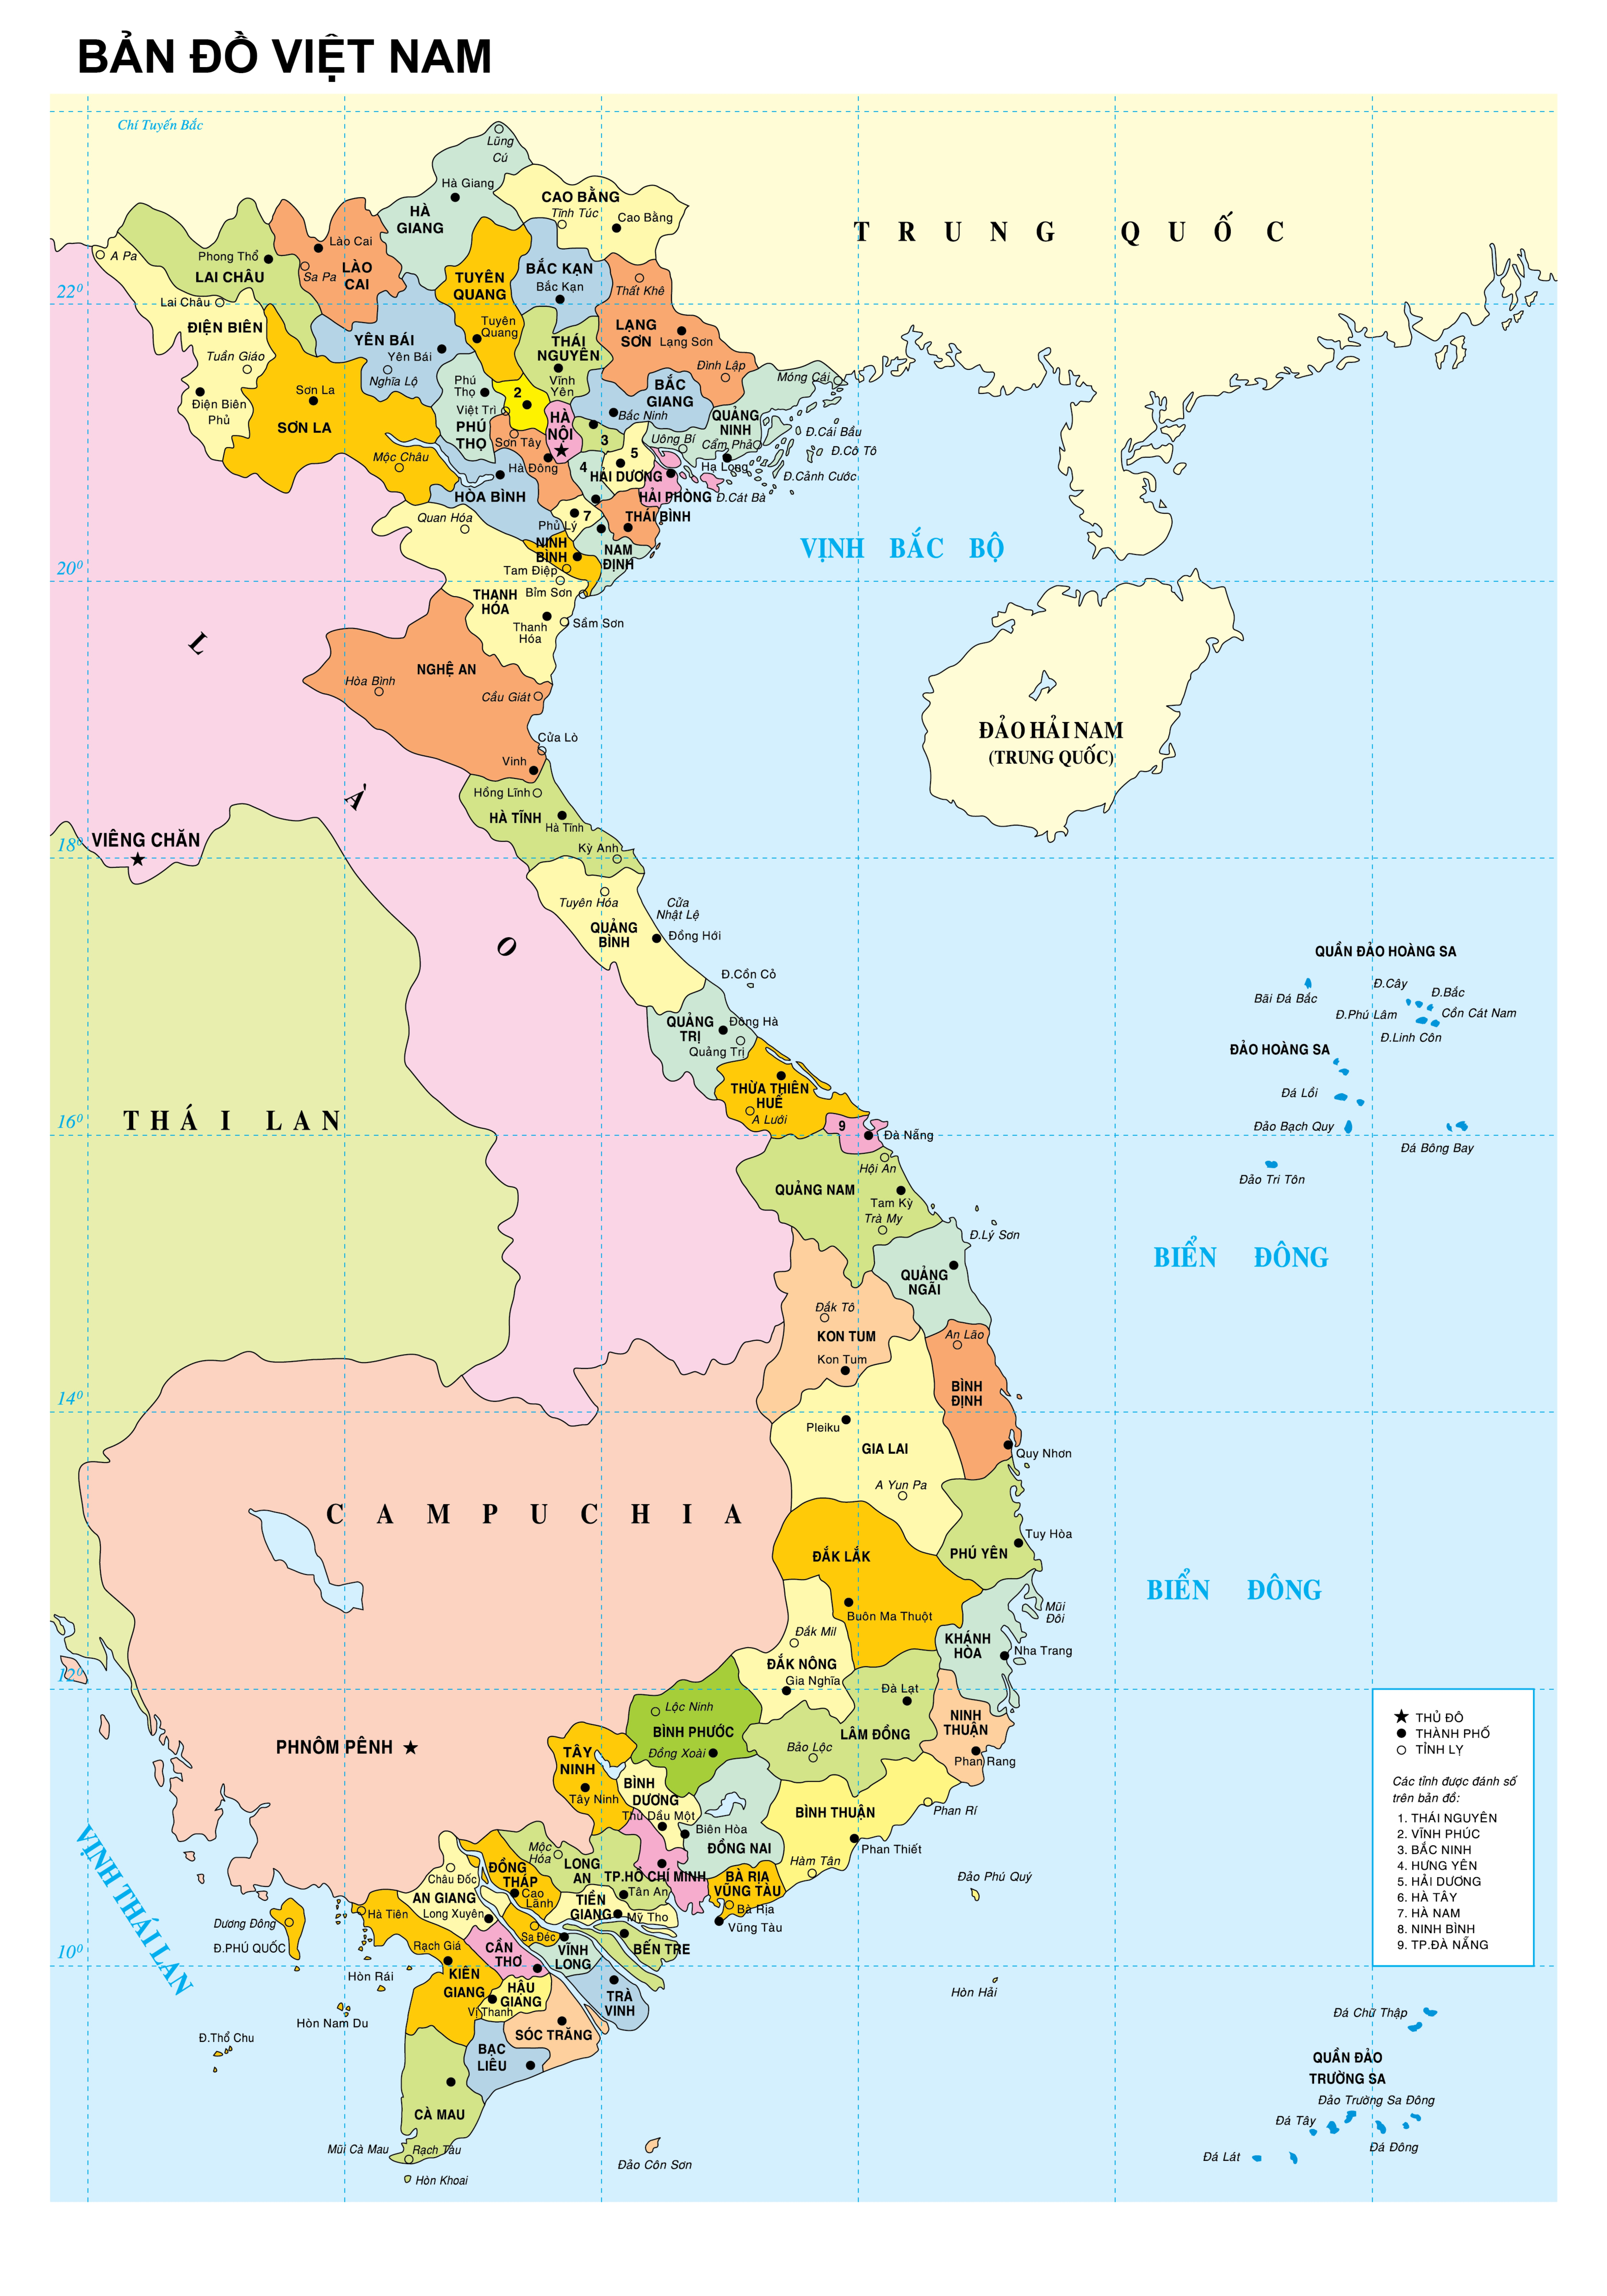 Khám phá từng góc cạnh của các tỉnh trong cơ cấu hành chính Việt Nam với bản đồ hành chính 2024 mới nhất! Từ Bắc Giang đến Kiên Giang, chỉ với một cái nhìn, bạn sẽ hiểu rõ hơn về địa lý, văn hóa và con người của mỗi tỉnh để có thể tìm ra cách phát triển tối ưu.